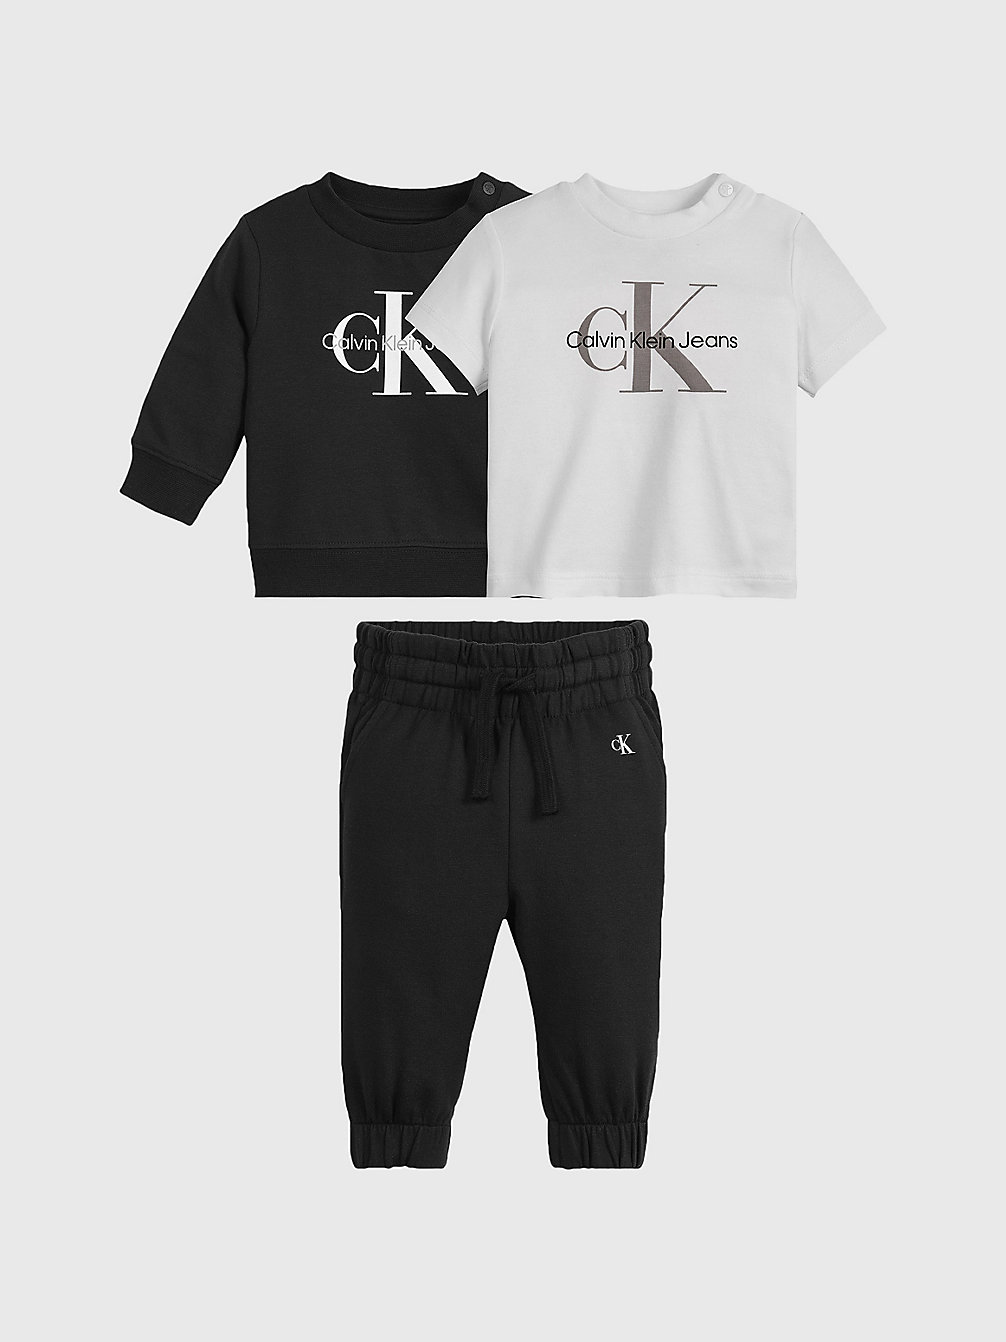 CK BLACK > Cadeauverpakking Newborn Starter > undefined newborn - Calvin Klein